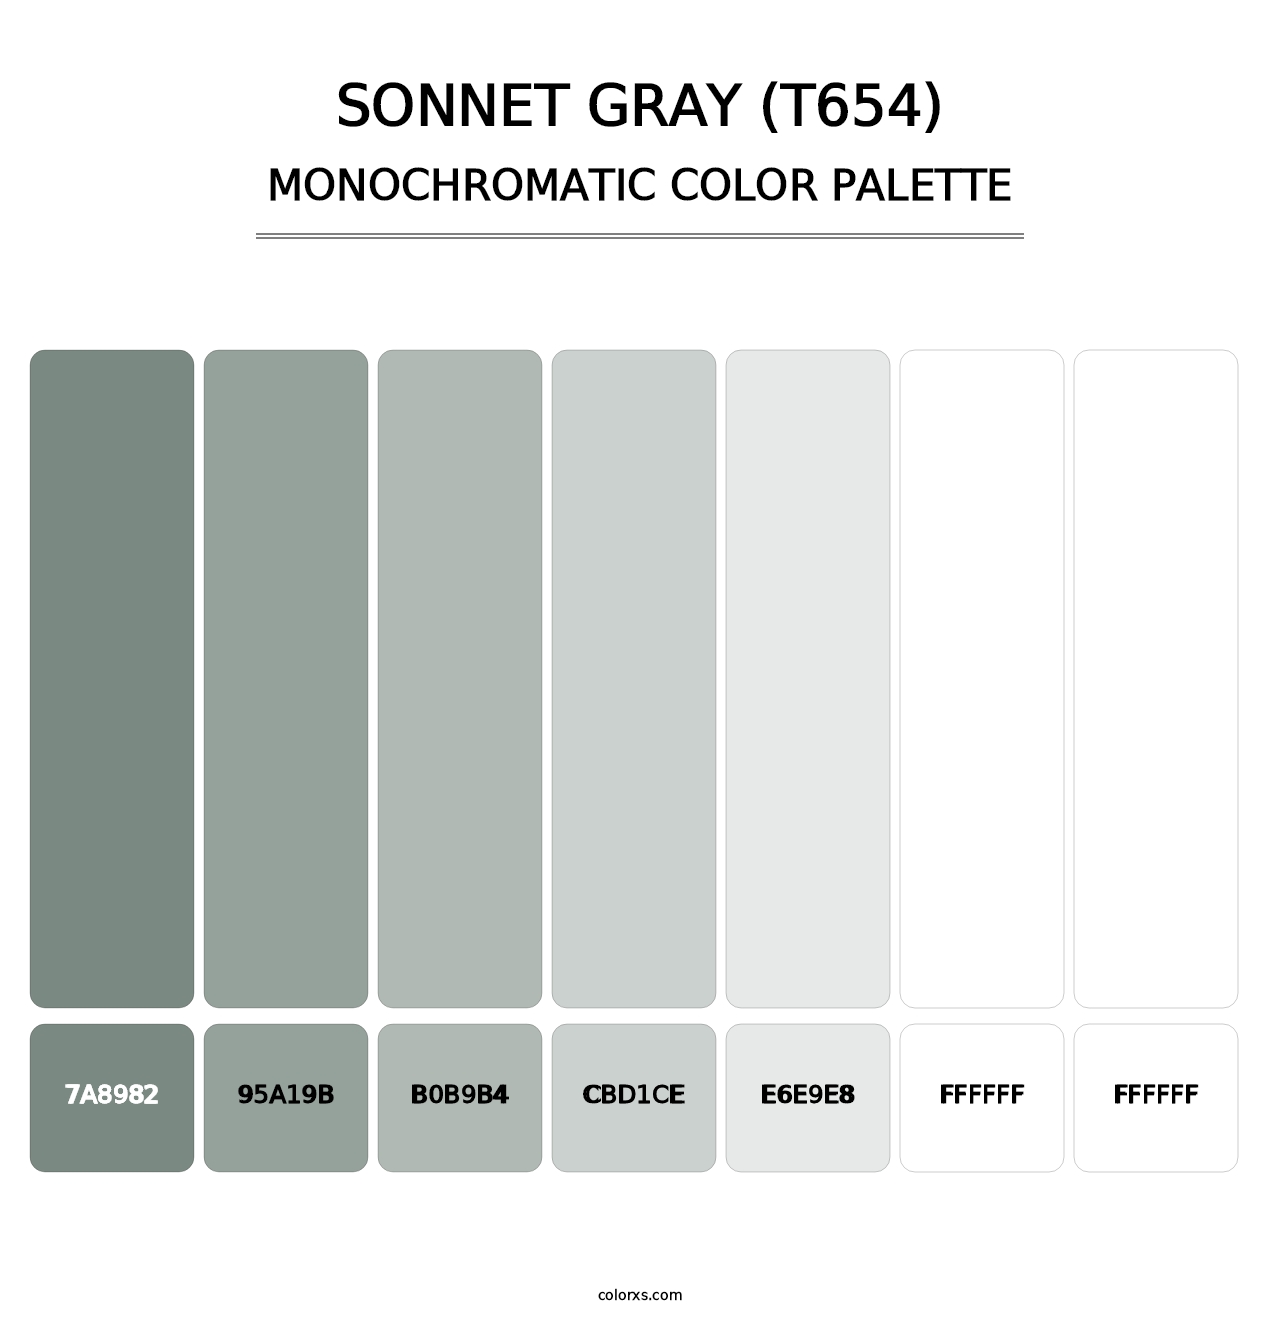 Sonnet Gray (T654) - Monochromatic Color Palette